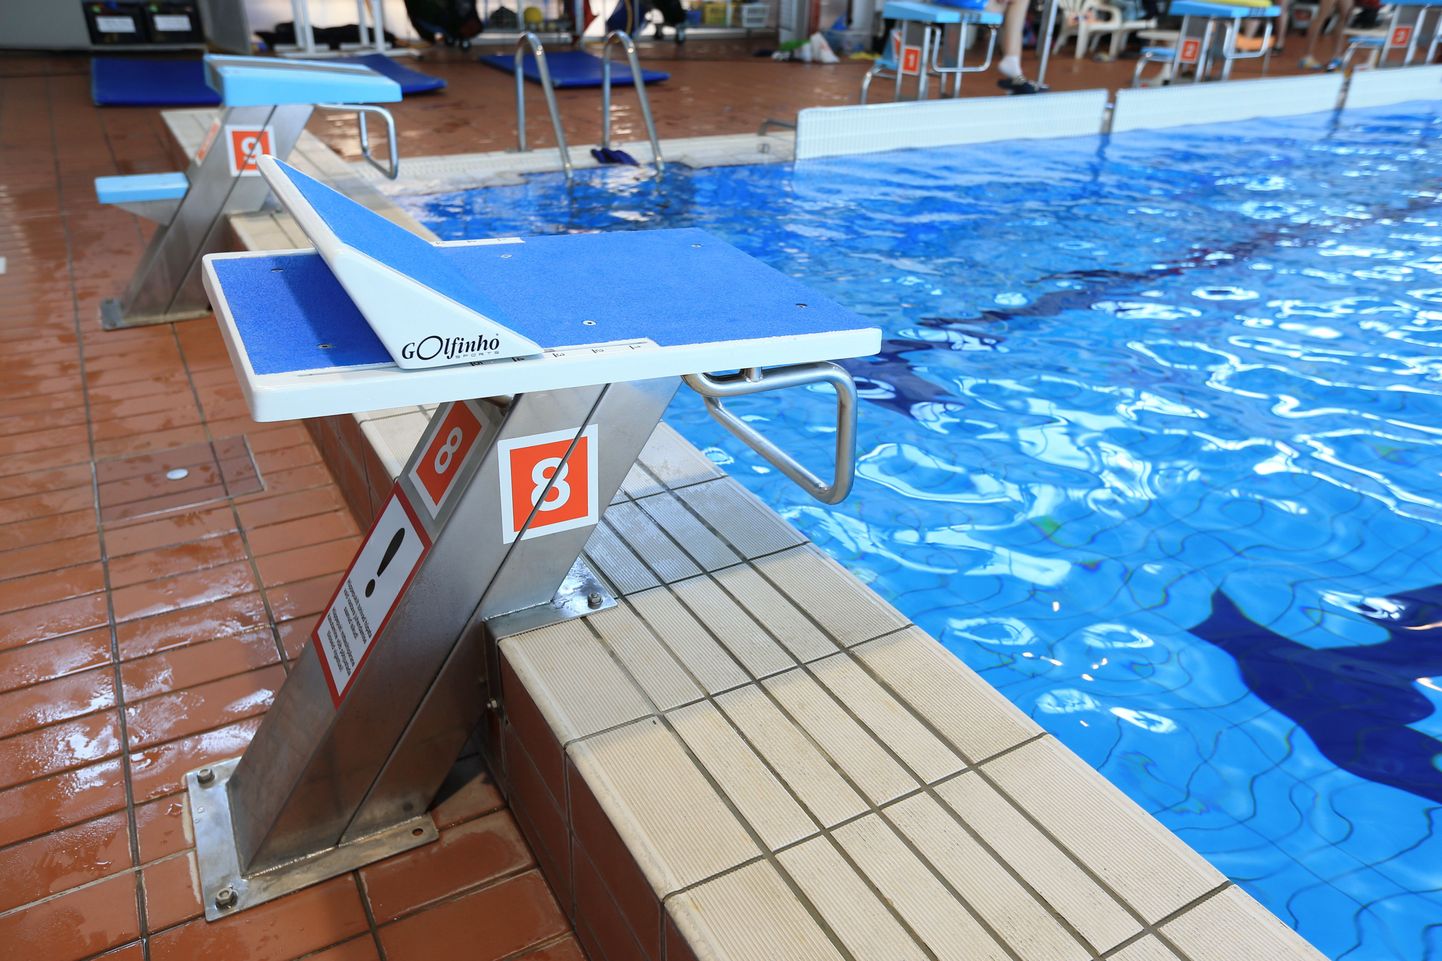 Aura keskus lasi paigaldada statsionaarsed stardiplatvormid, mis vastavad rahvusvahelise ujumisliidu nõuetele.